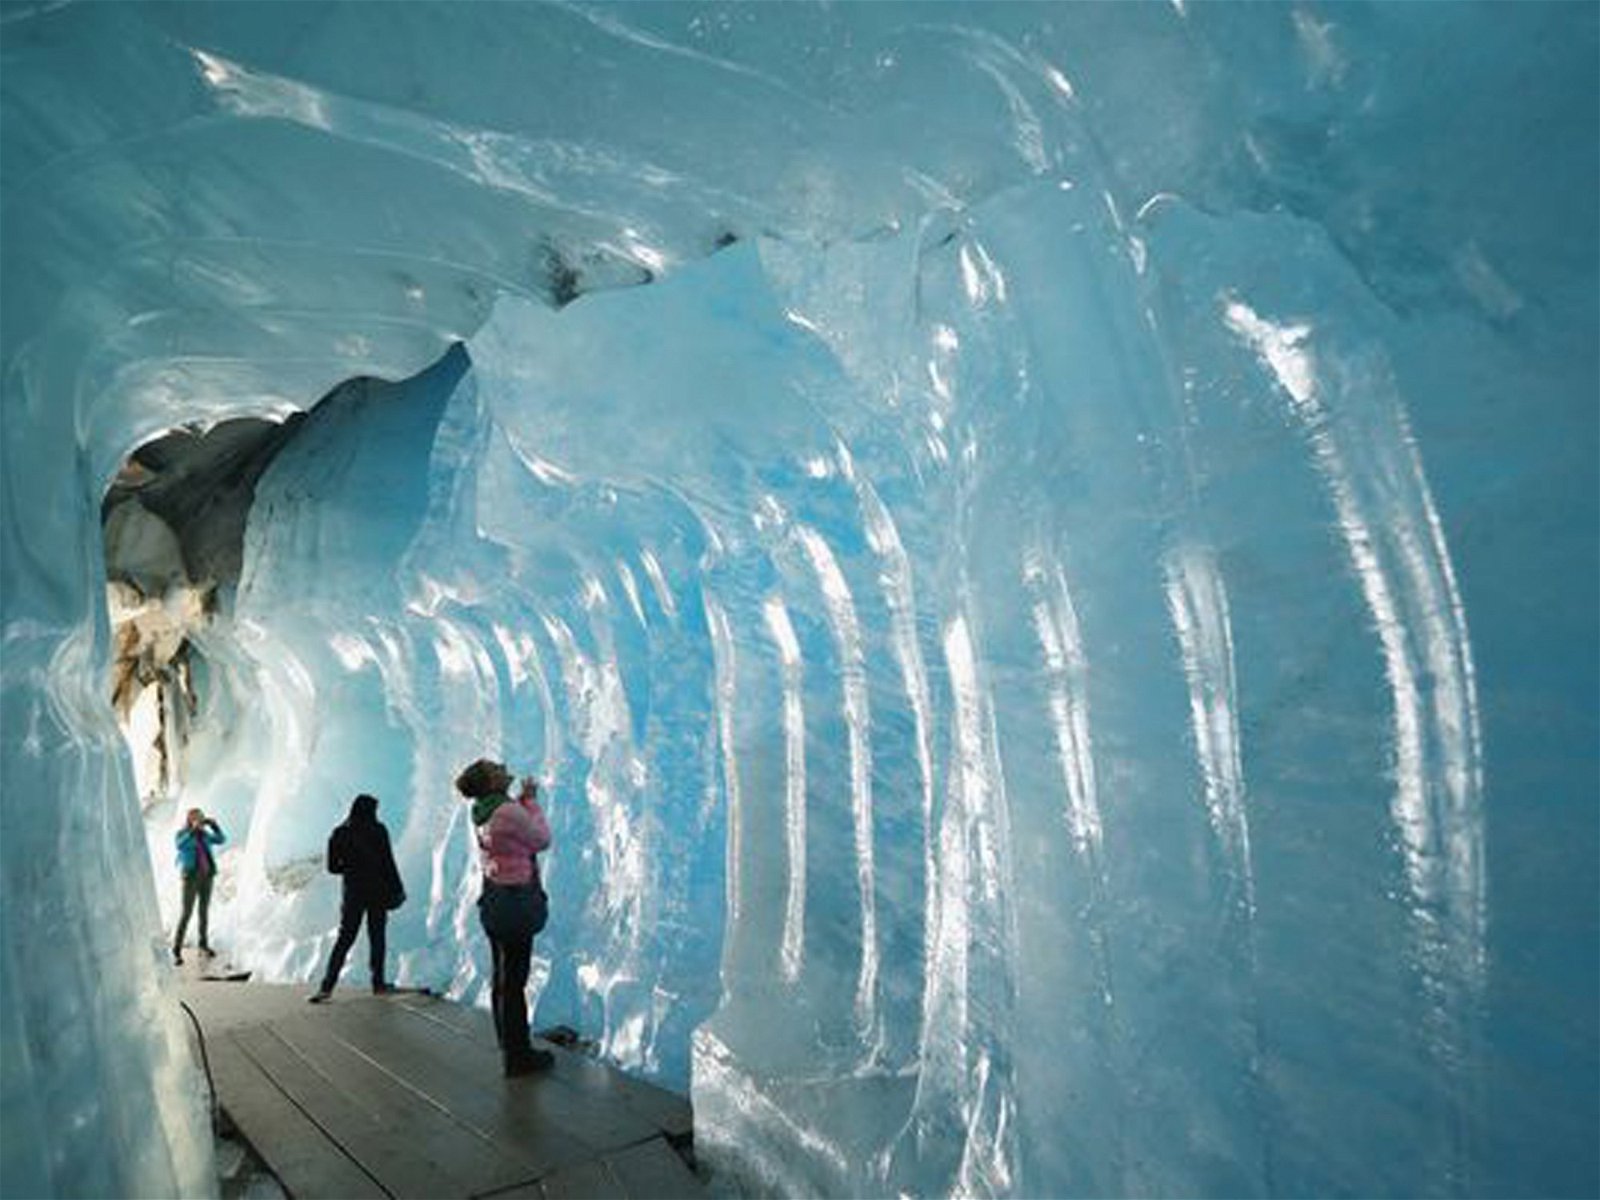 科学家在冰川内凿出一条隧道供游客穿行，并深入接触数千年未被开发的远古冰层。游客们走在冰隧道内，仿佛走进时光隧道，触目所及的都是凝结了上万年的古老冰层及生物遗迹。